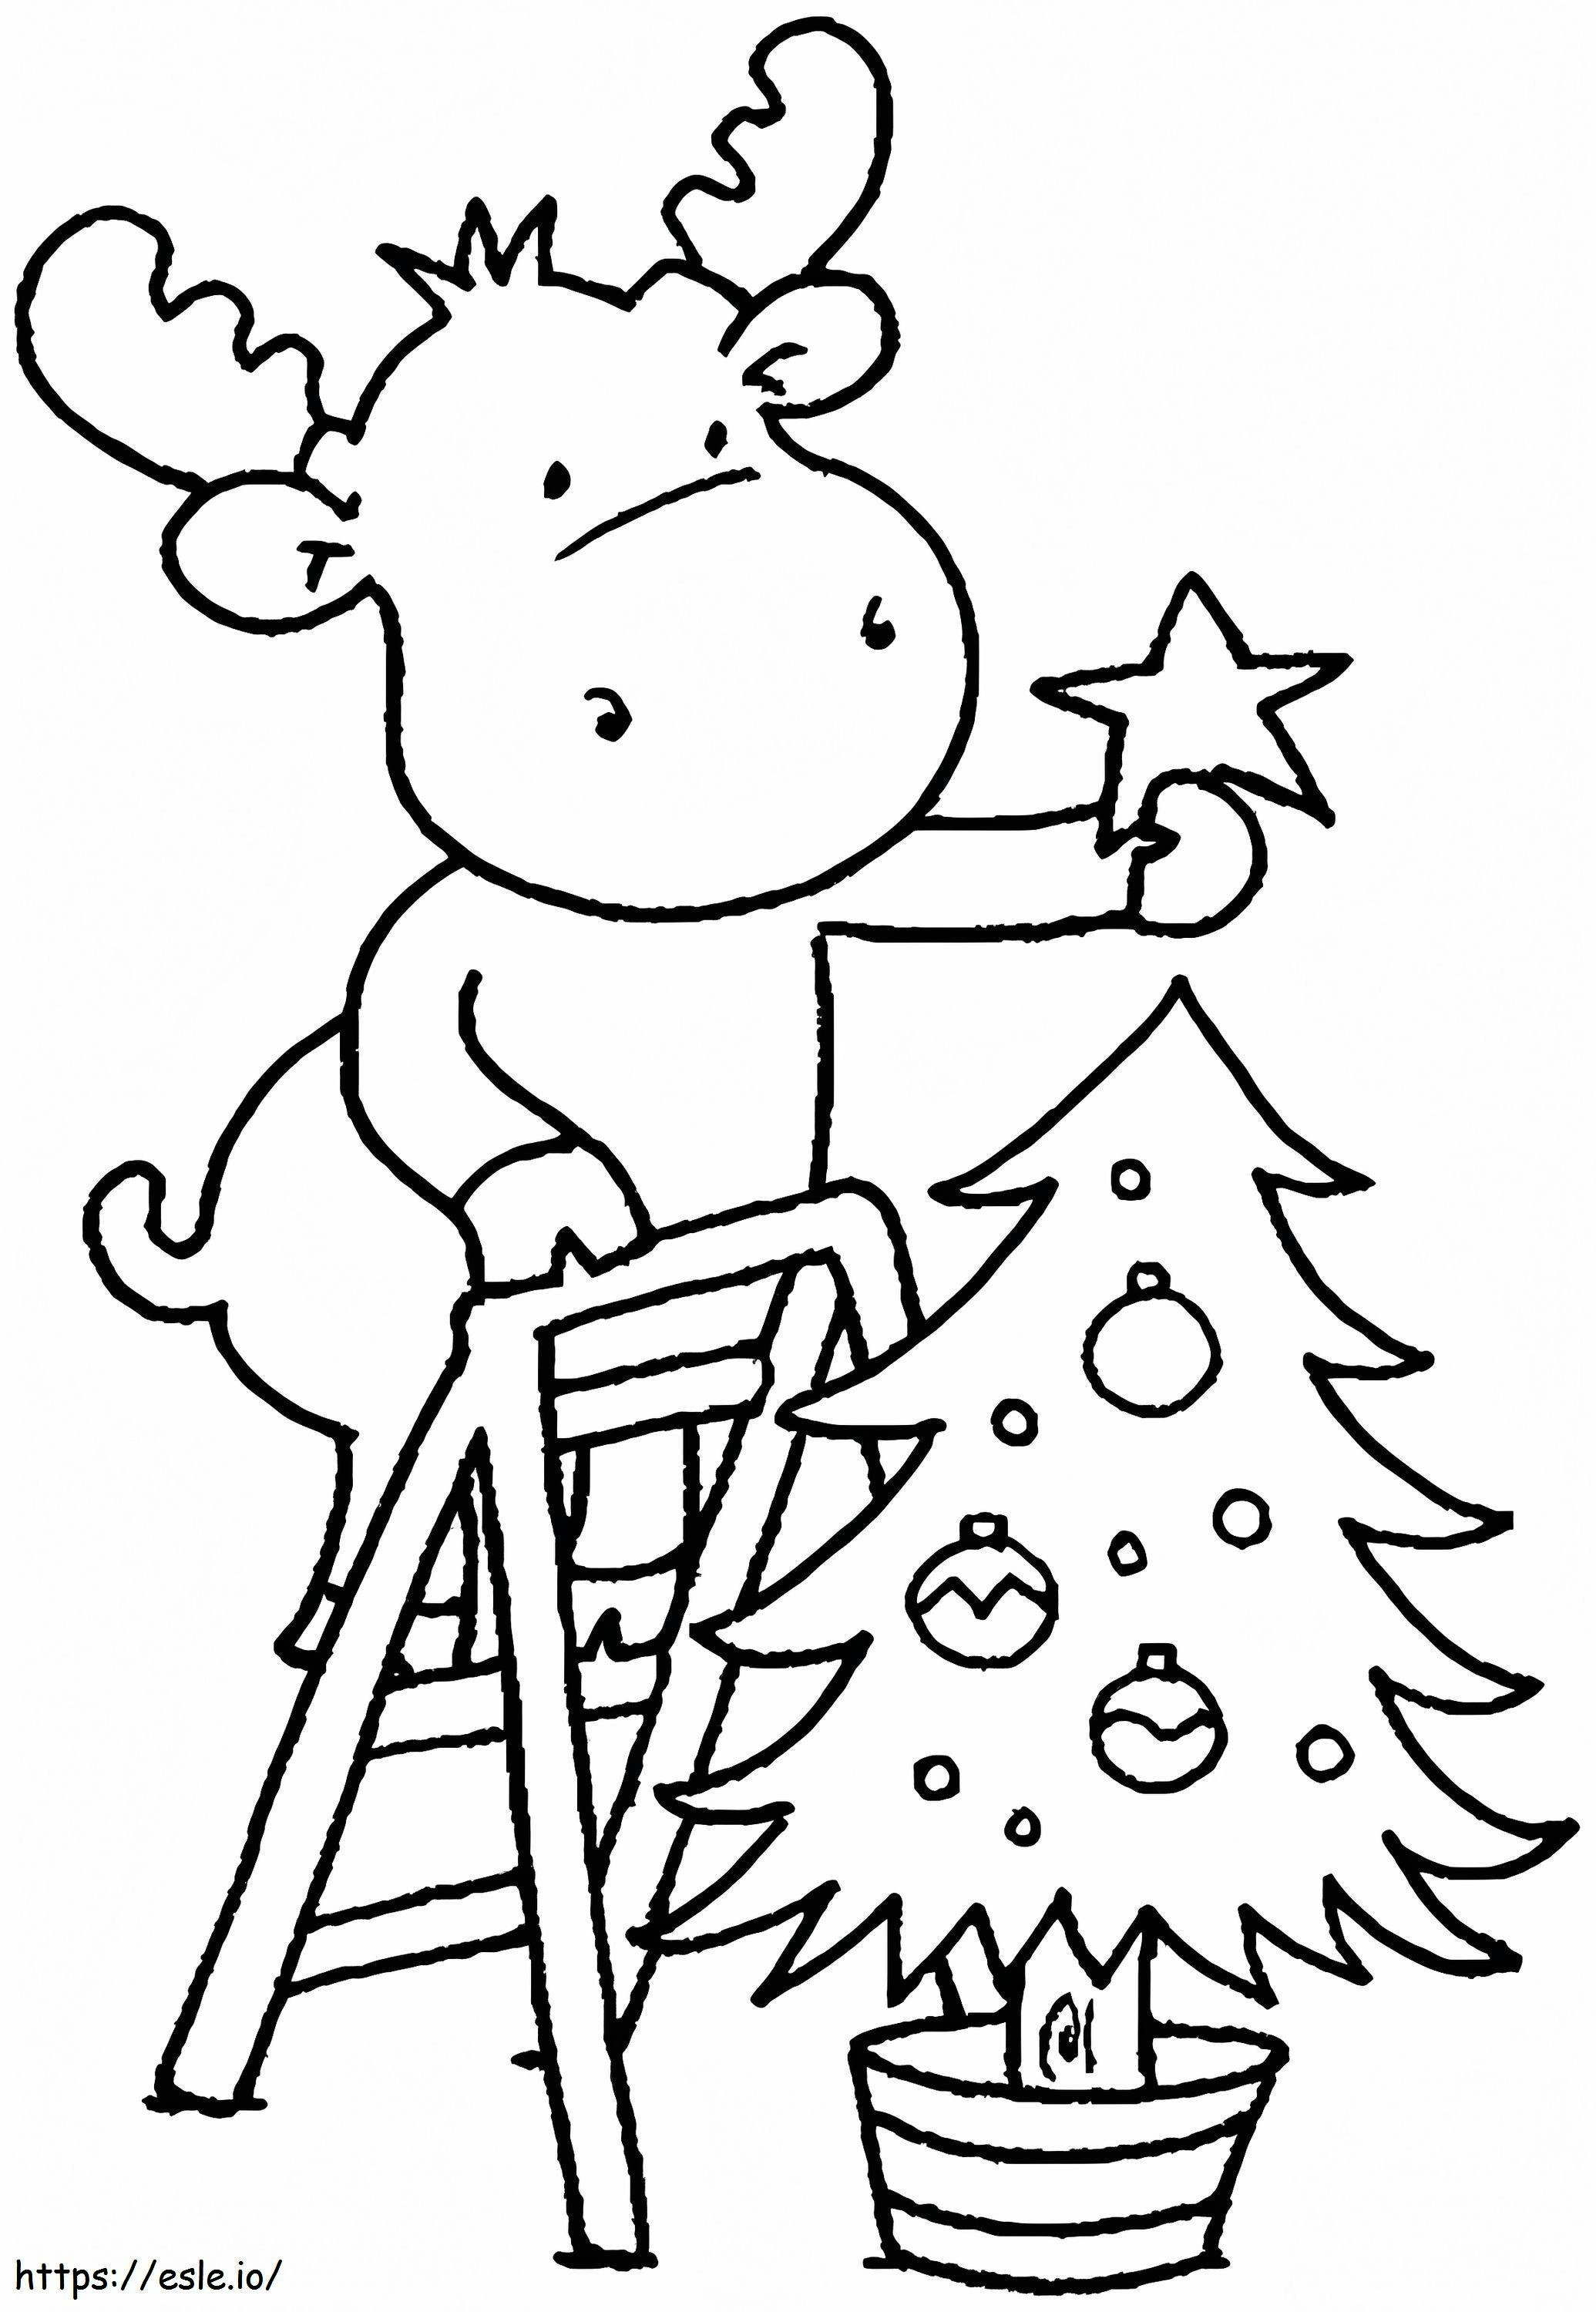 1541725061_Karácsonyi oldalak színezése Kisgyermekek ingyenes színezése karácsonyi színező képek óvodásoknak kifestő